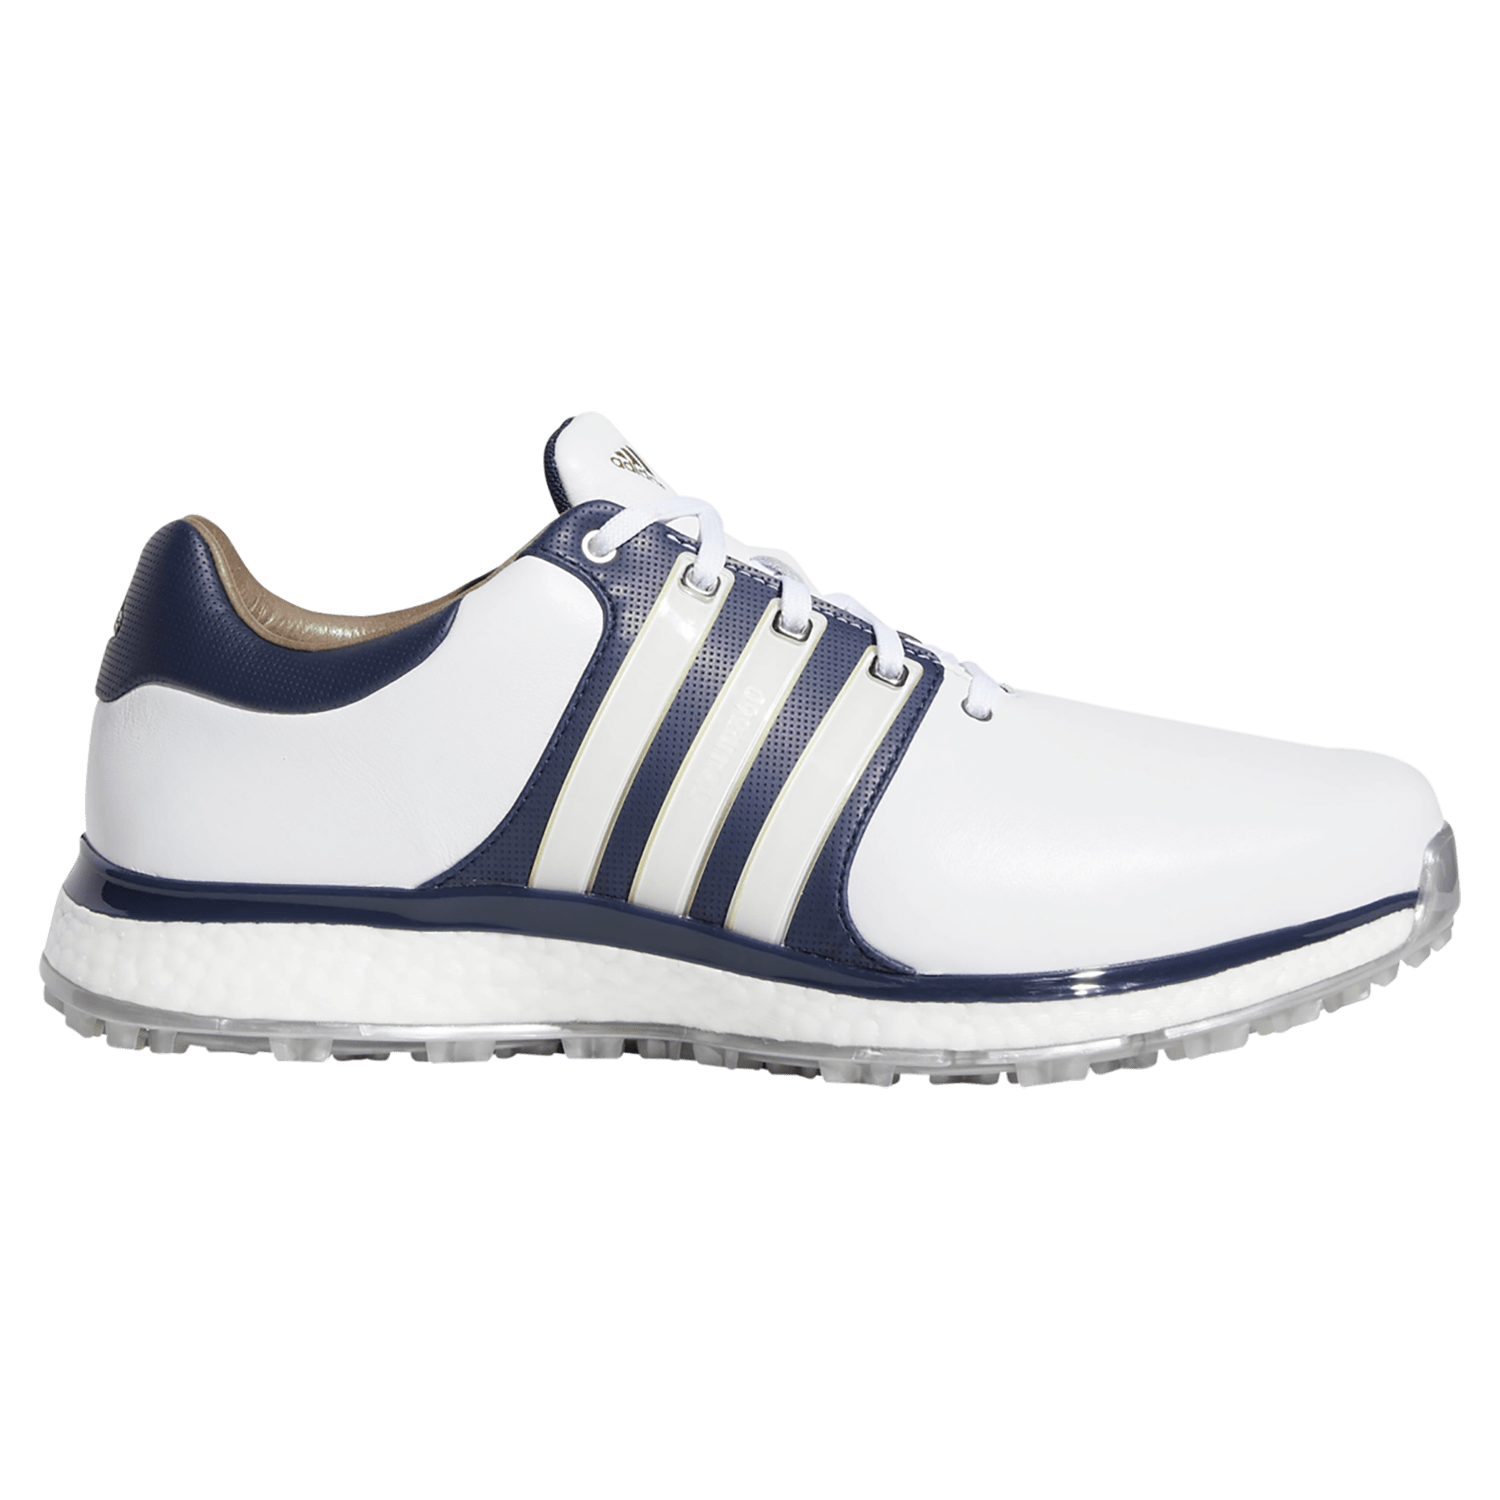 adidas men's tour360 xt spikeless golf shoe